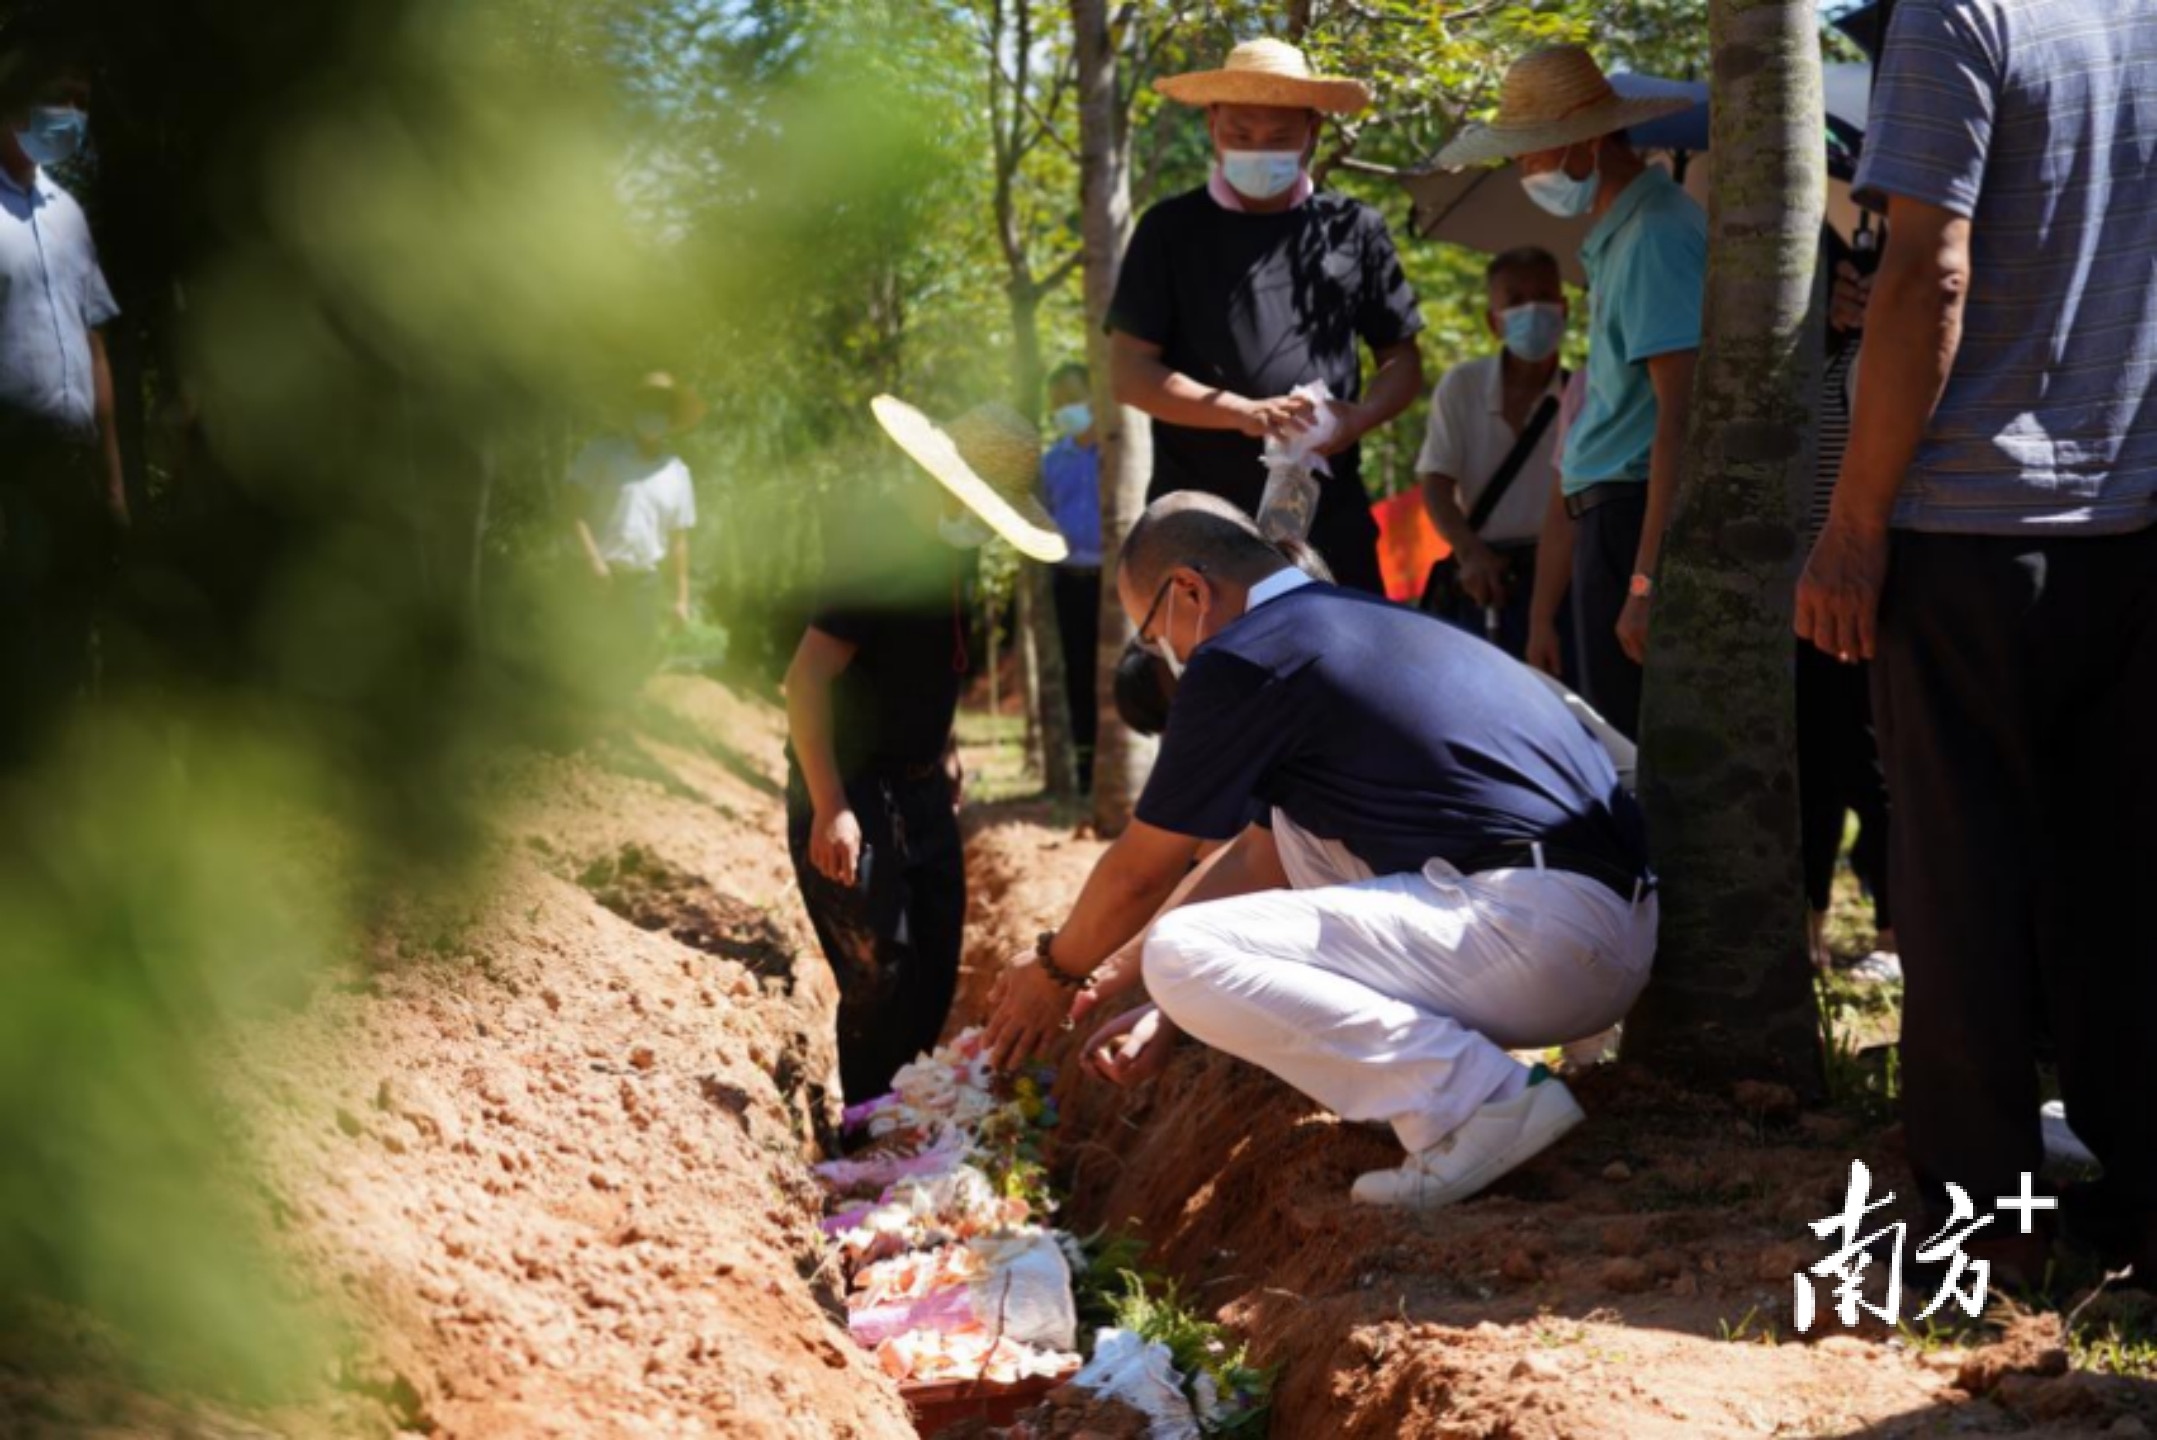 张成朋烈士骨灰在邹平市烈士陵园安葬 现场上万人悲痛悼念__凤凰网